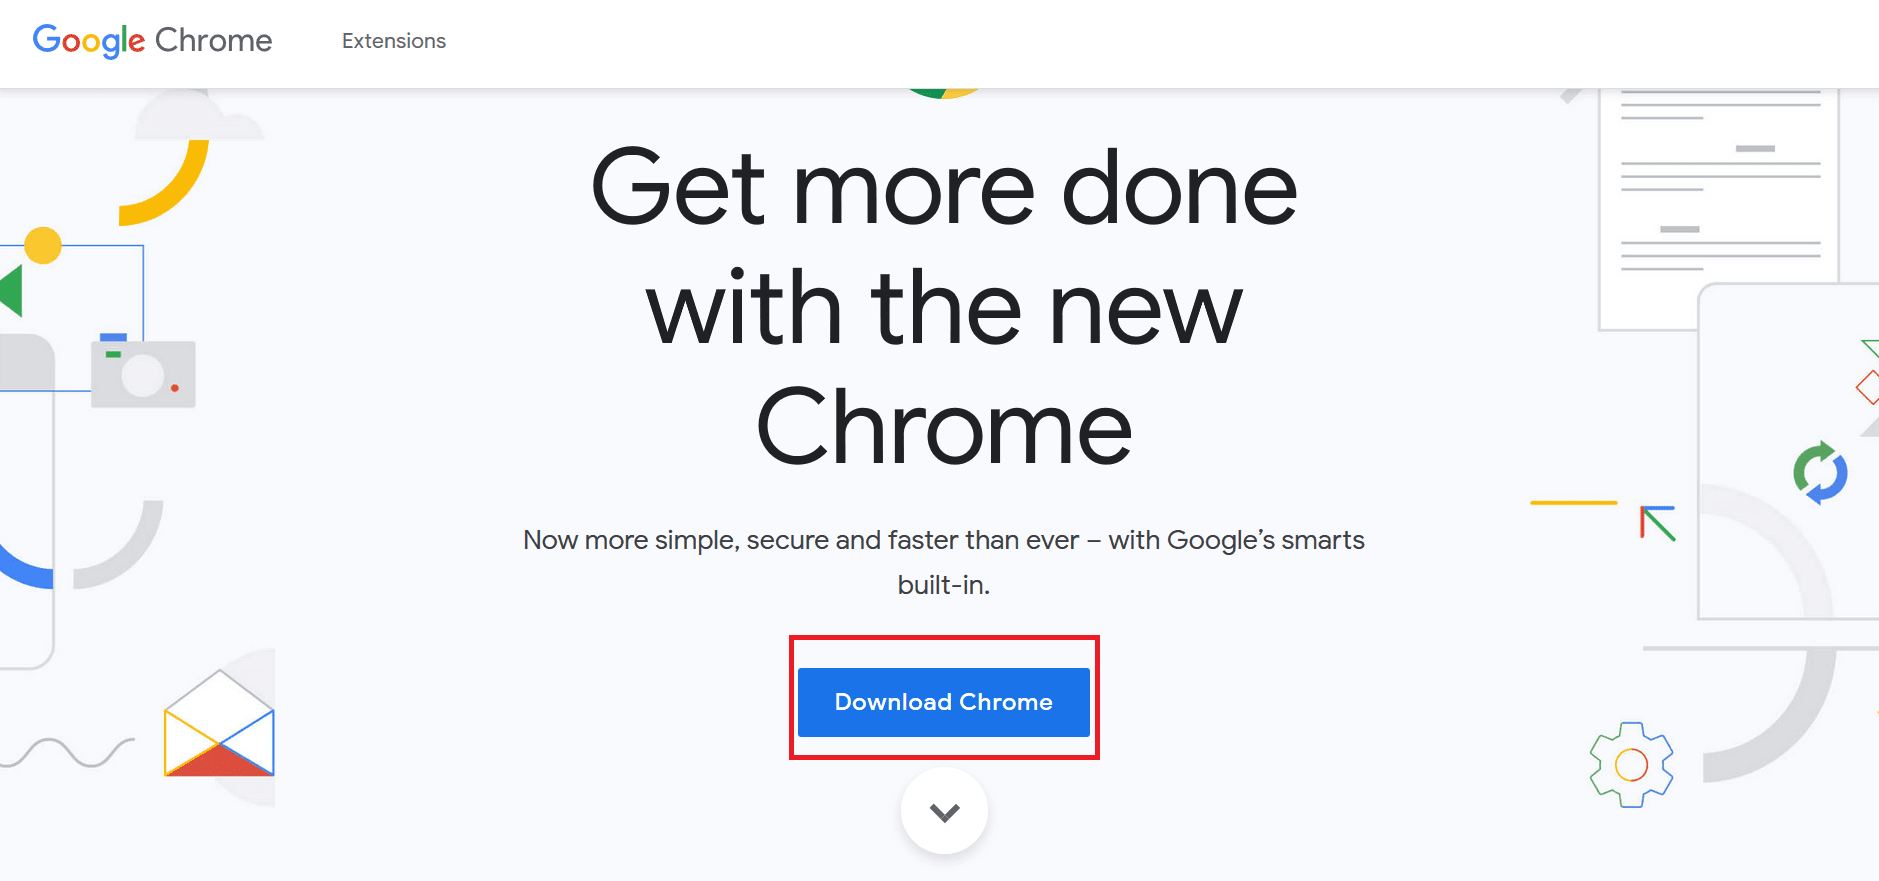 [Chromeのダウンロード]ボタンをクリックして、最新バージョンのChromeインストーラーをダウンロードします。